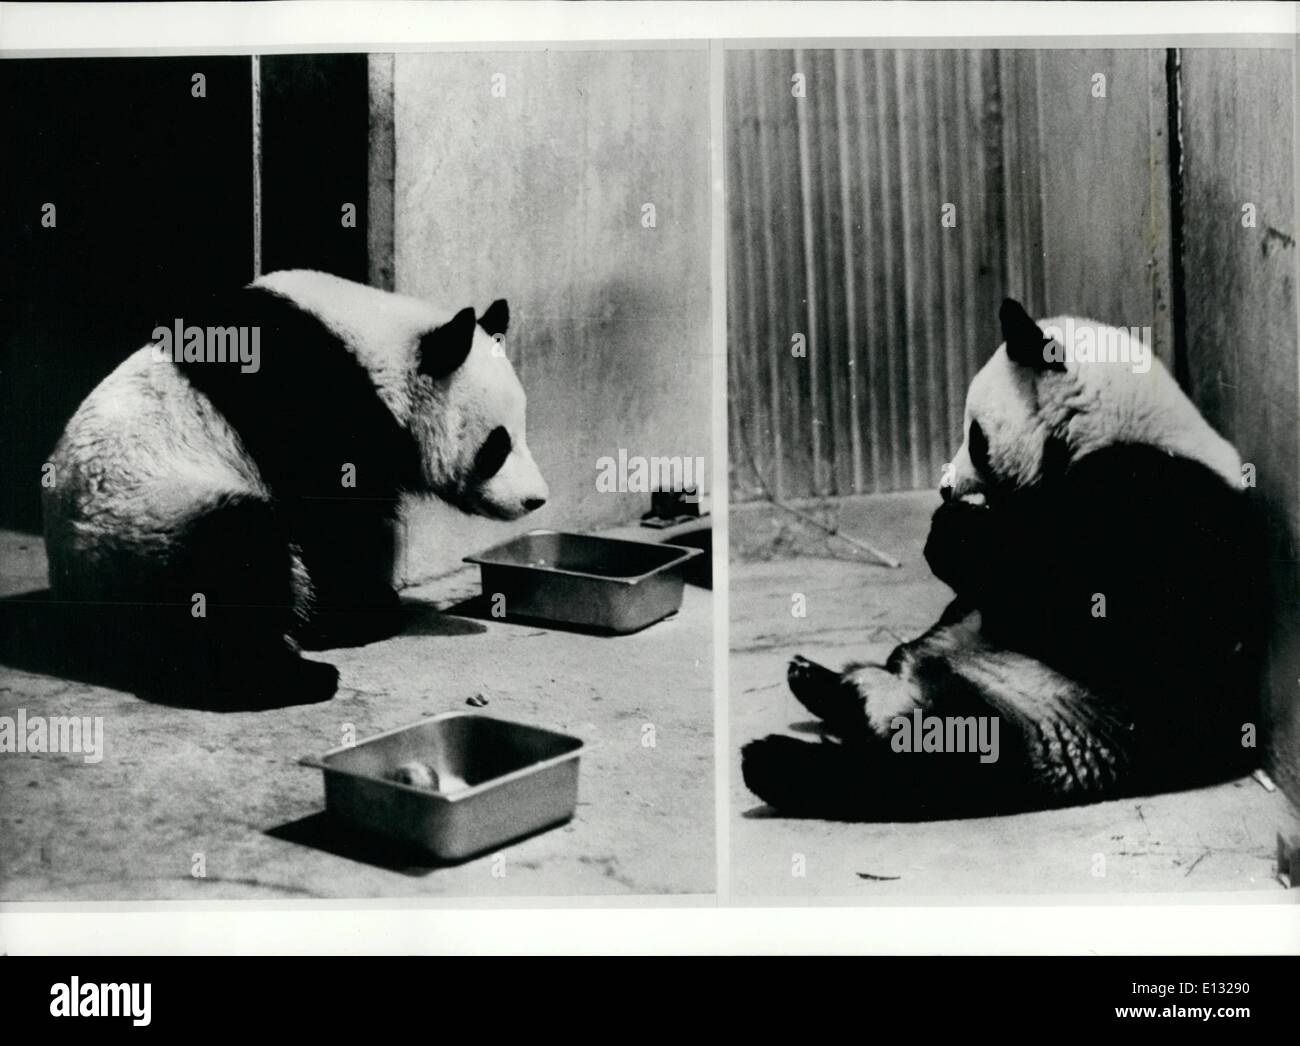 Febrero 26, 2012 - Mao Pandas para Nixon: como resultado de la visita del presidente Nixon a China, una pareja de pandas fueron dadas a conocer por el gobierno chino, en honor de la visita. Hising-Hisng, un macho (izquierda) y una hembra Ling-Ling, están creando un gran interés en el Zoológico de Washington. Foto de stock